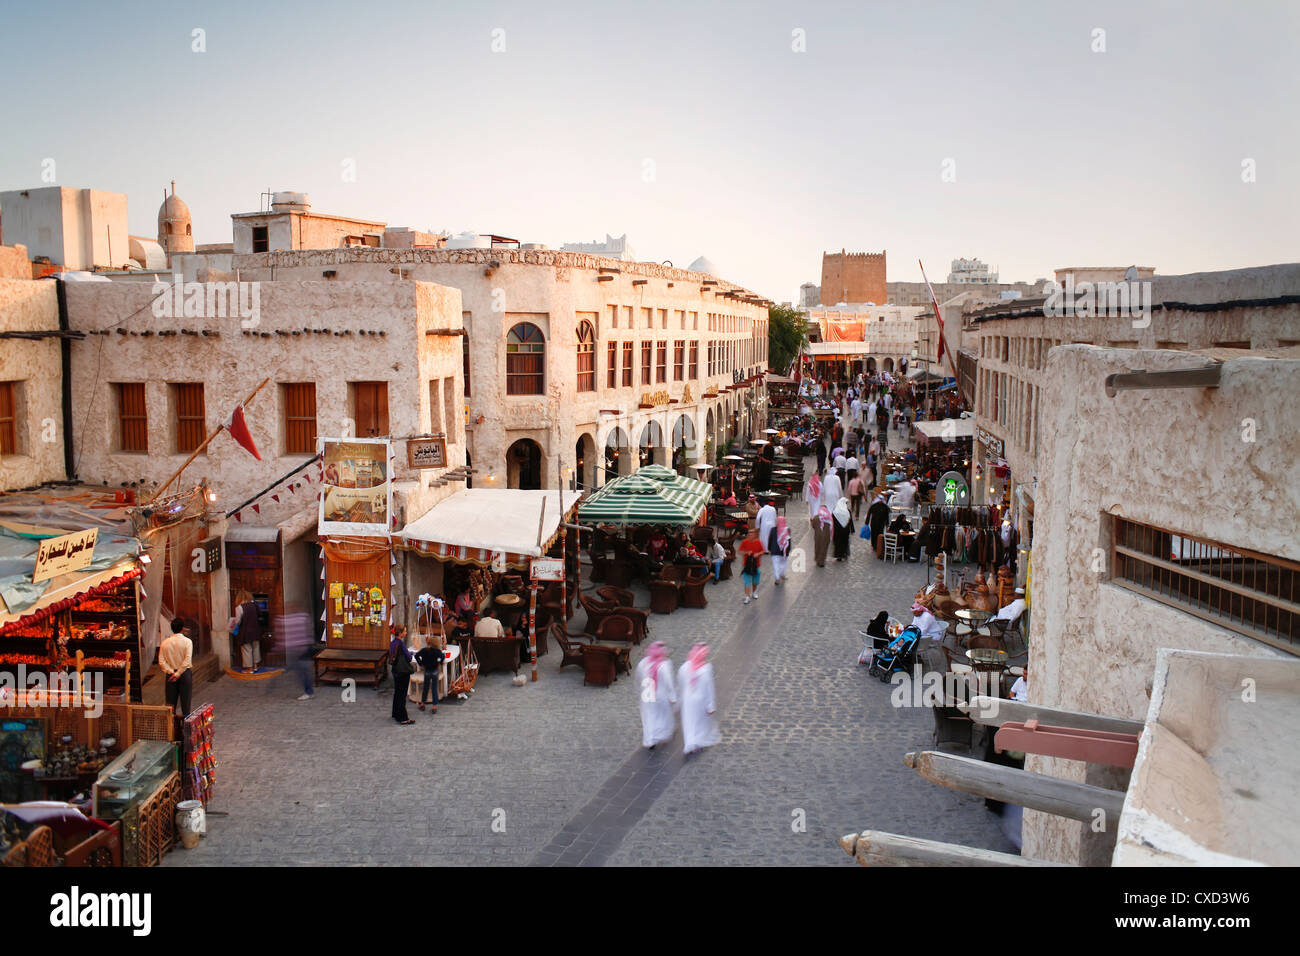 Le souq Waqif restauré avec de la boue rendus boutiques et des poutres en bois apparentes, Doha, Qatar, Moyen-Orient Banque D'Images